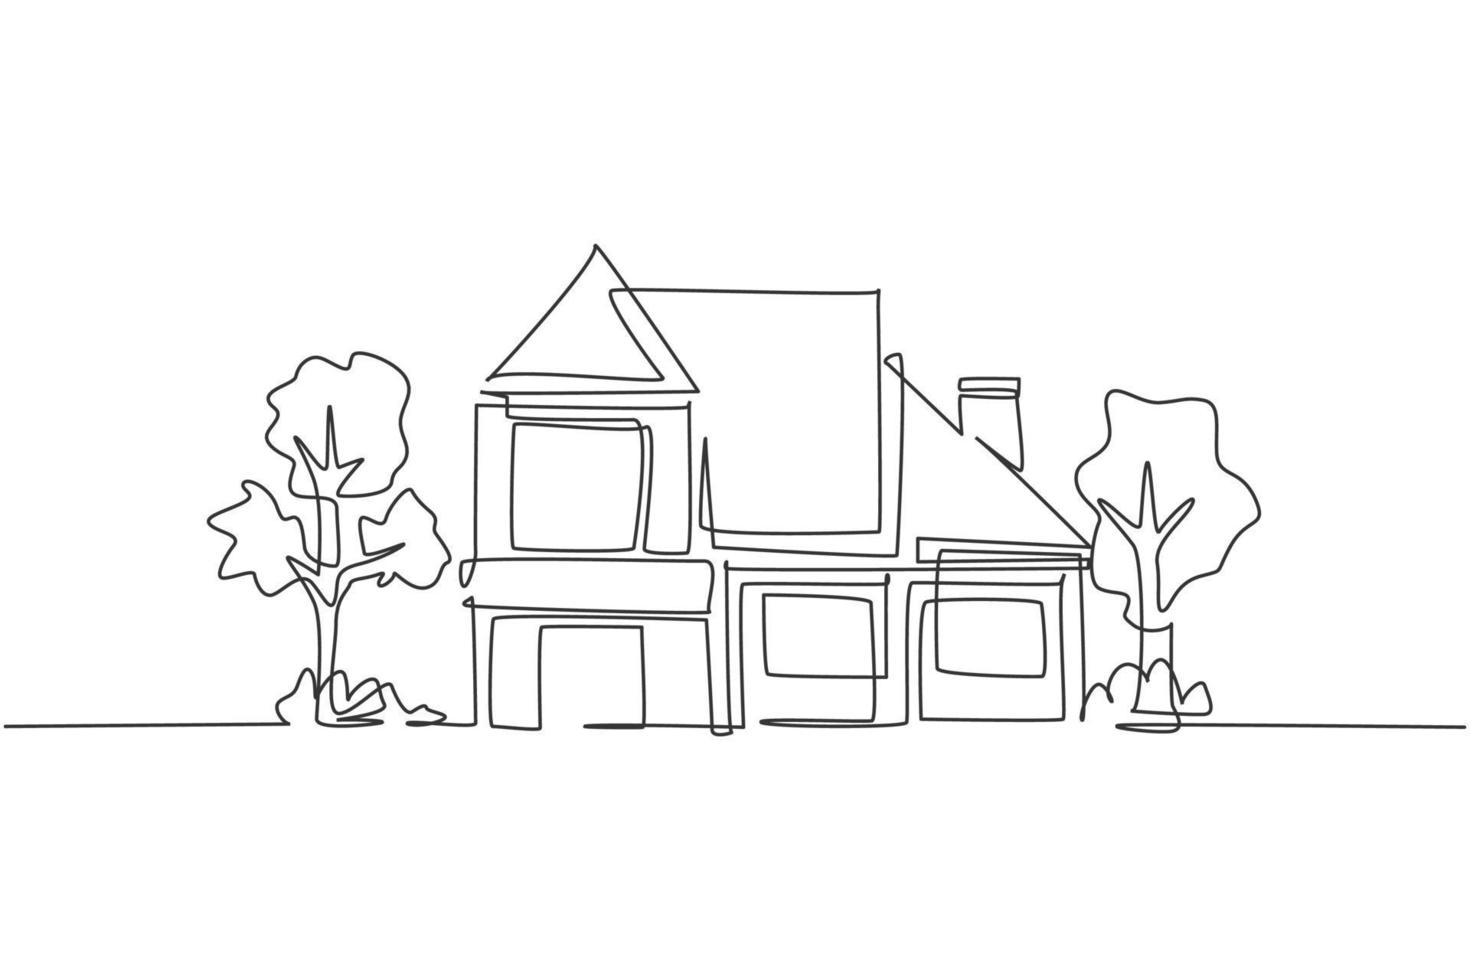 Einzelzeichnung eines umweltfreundlichen Hausbaus. Haus architektonisches Eigentum isoliert Doodle minimales Konzept. trendige durchgehende Linie zeichnen Design-Grafik-Vektor-Illustration vektor